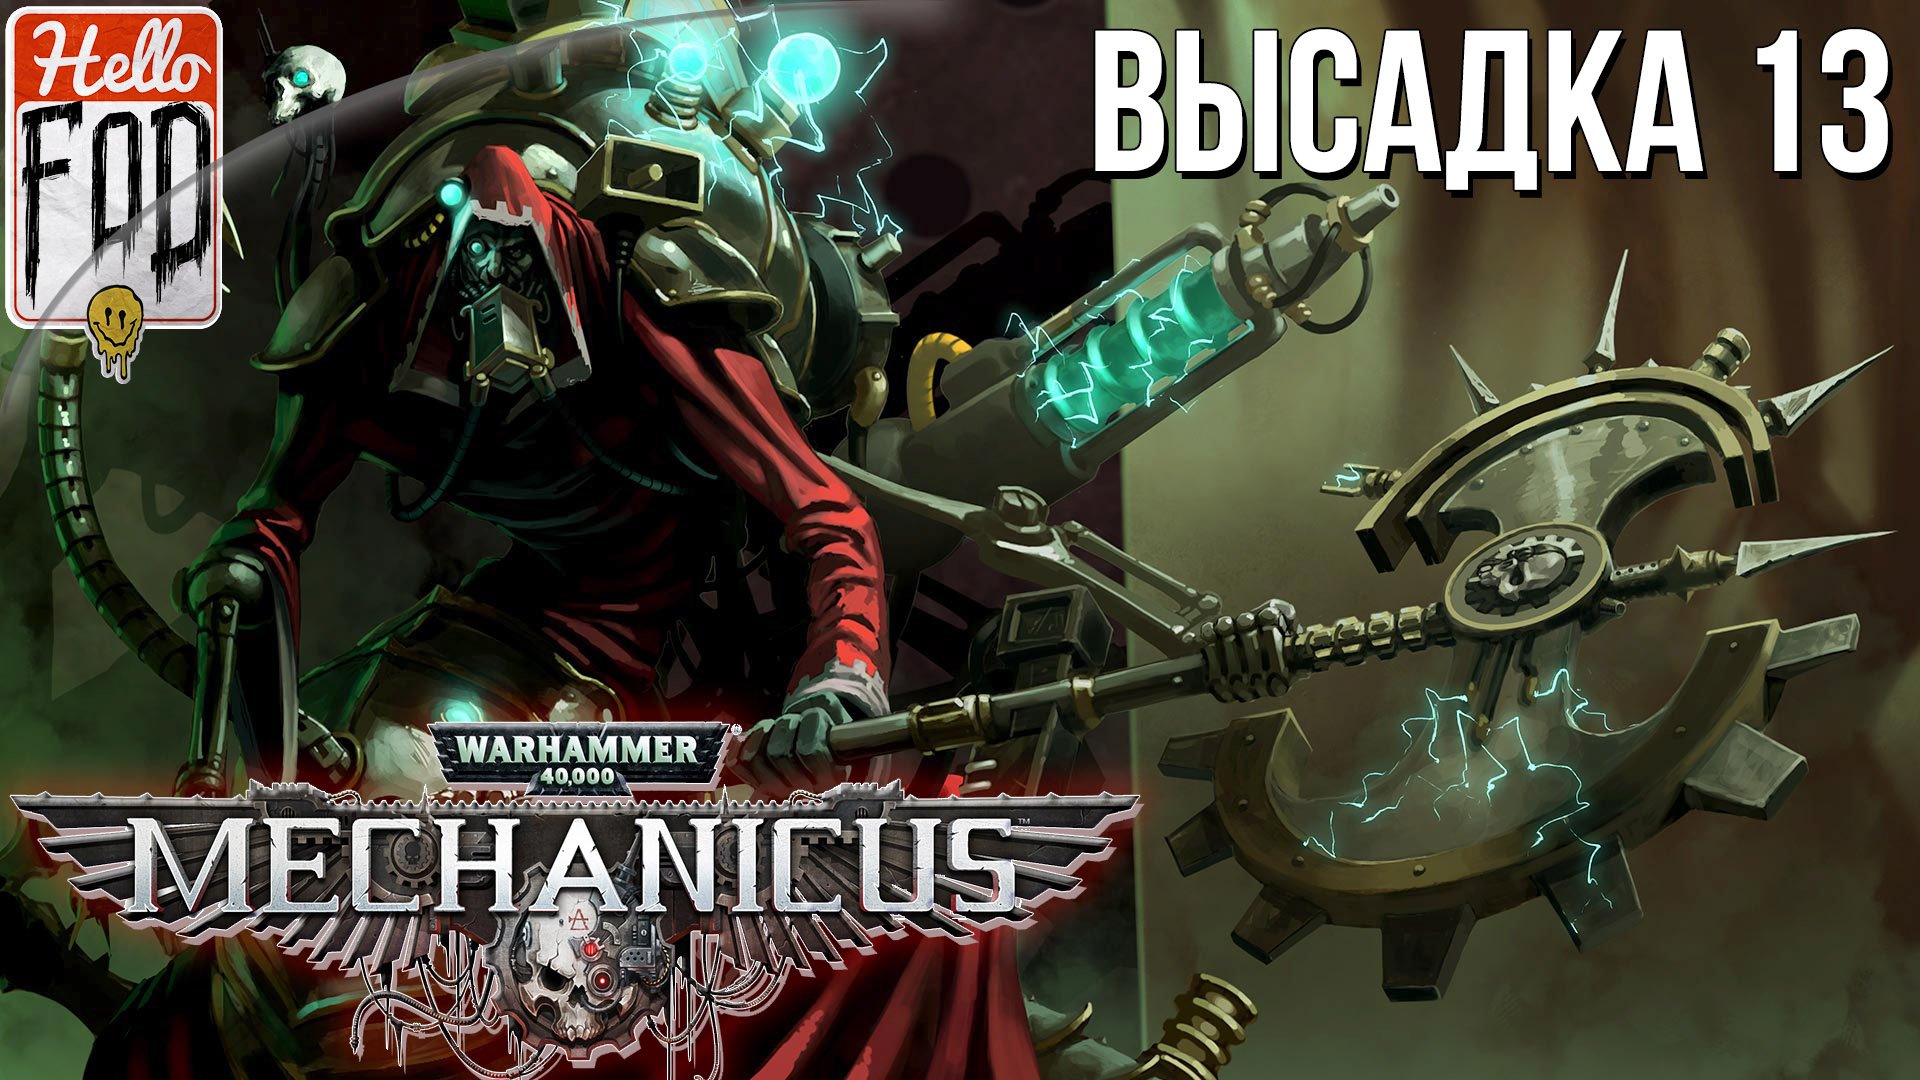 Warhammer 40.000 Mechanicus (Сложность: Очень сложно) ➤ Гробокопатели ➤ Высадка 13.